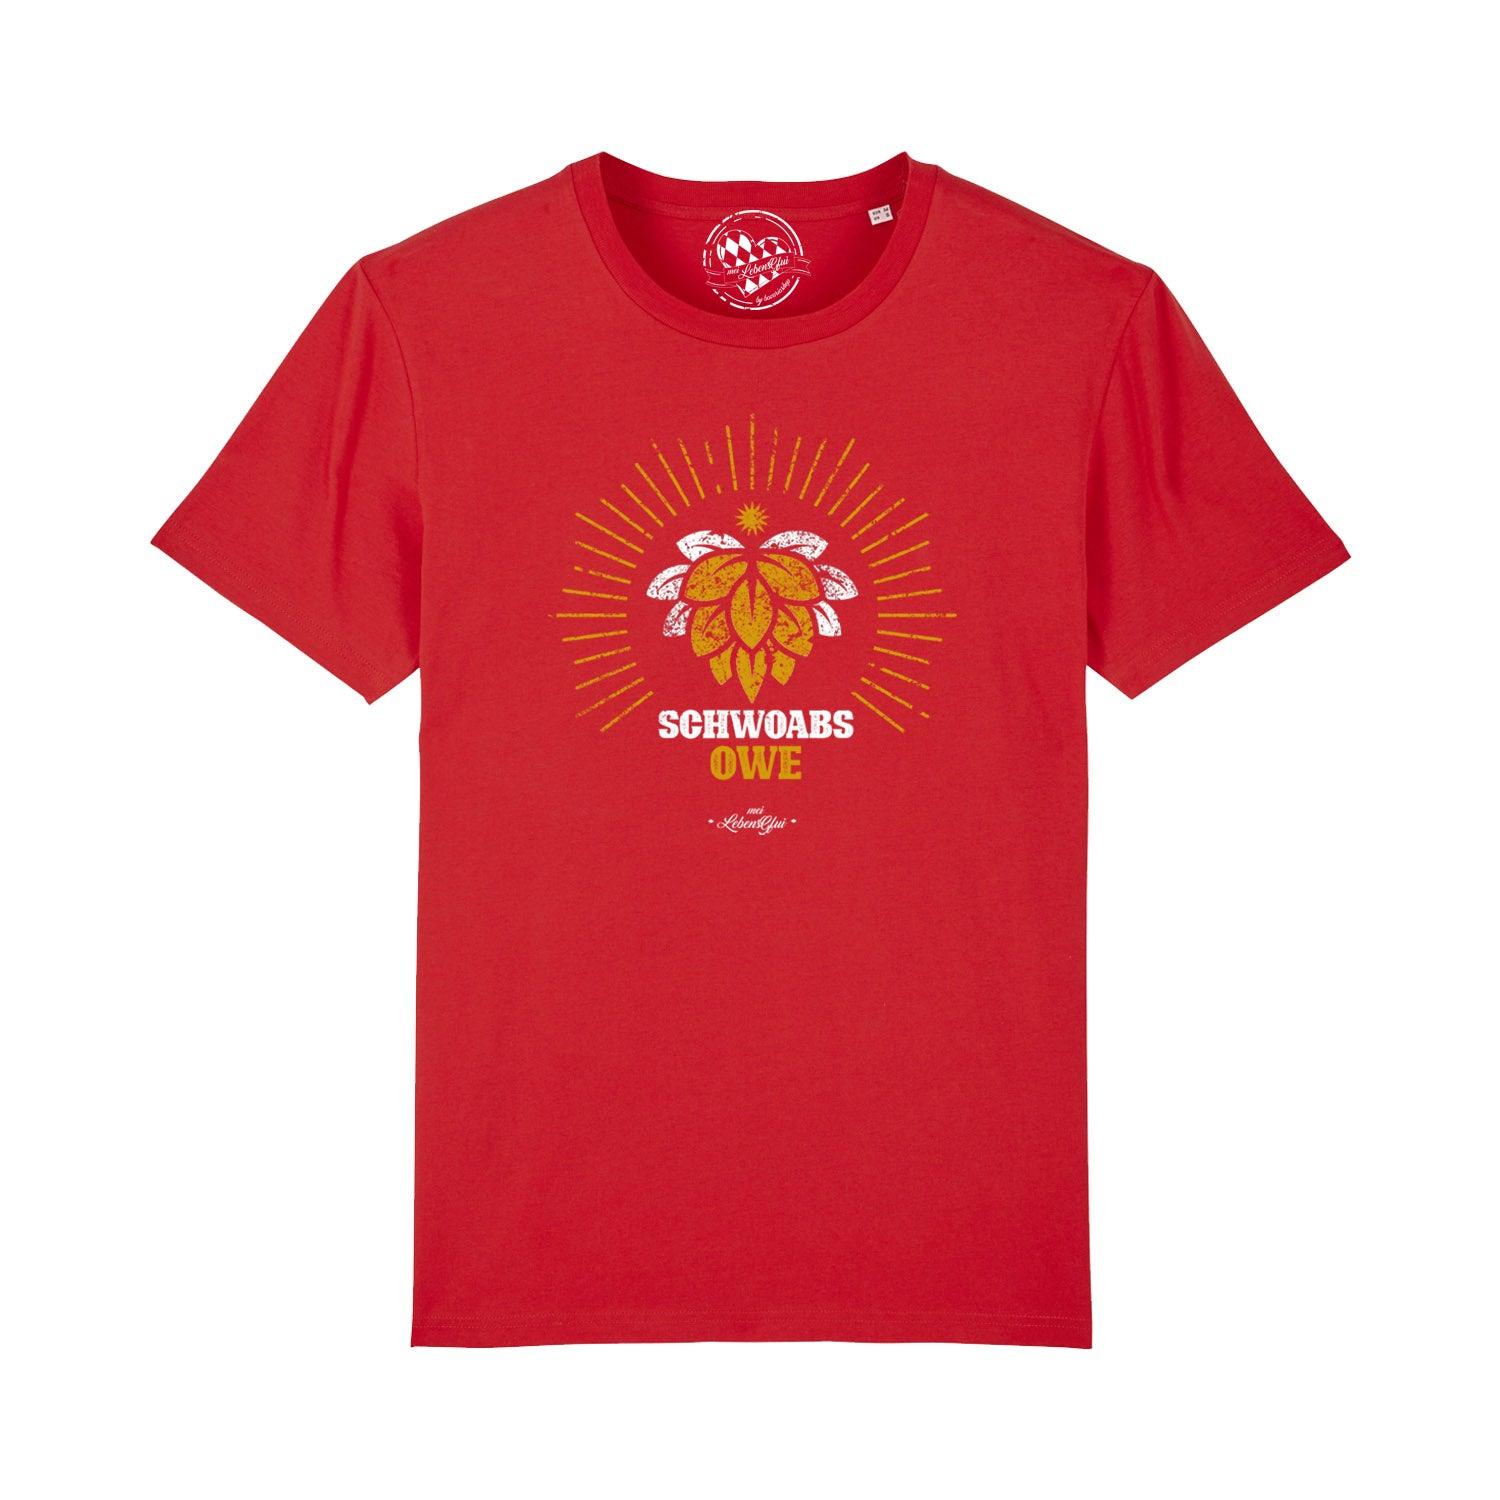 Herren T-Shirt "Schwoabs owe" - bavariashop - mei LebensGfui